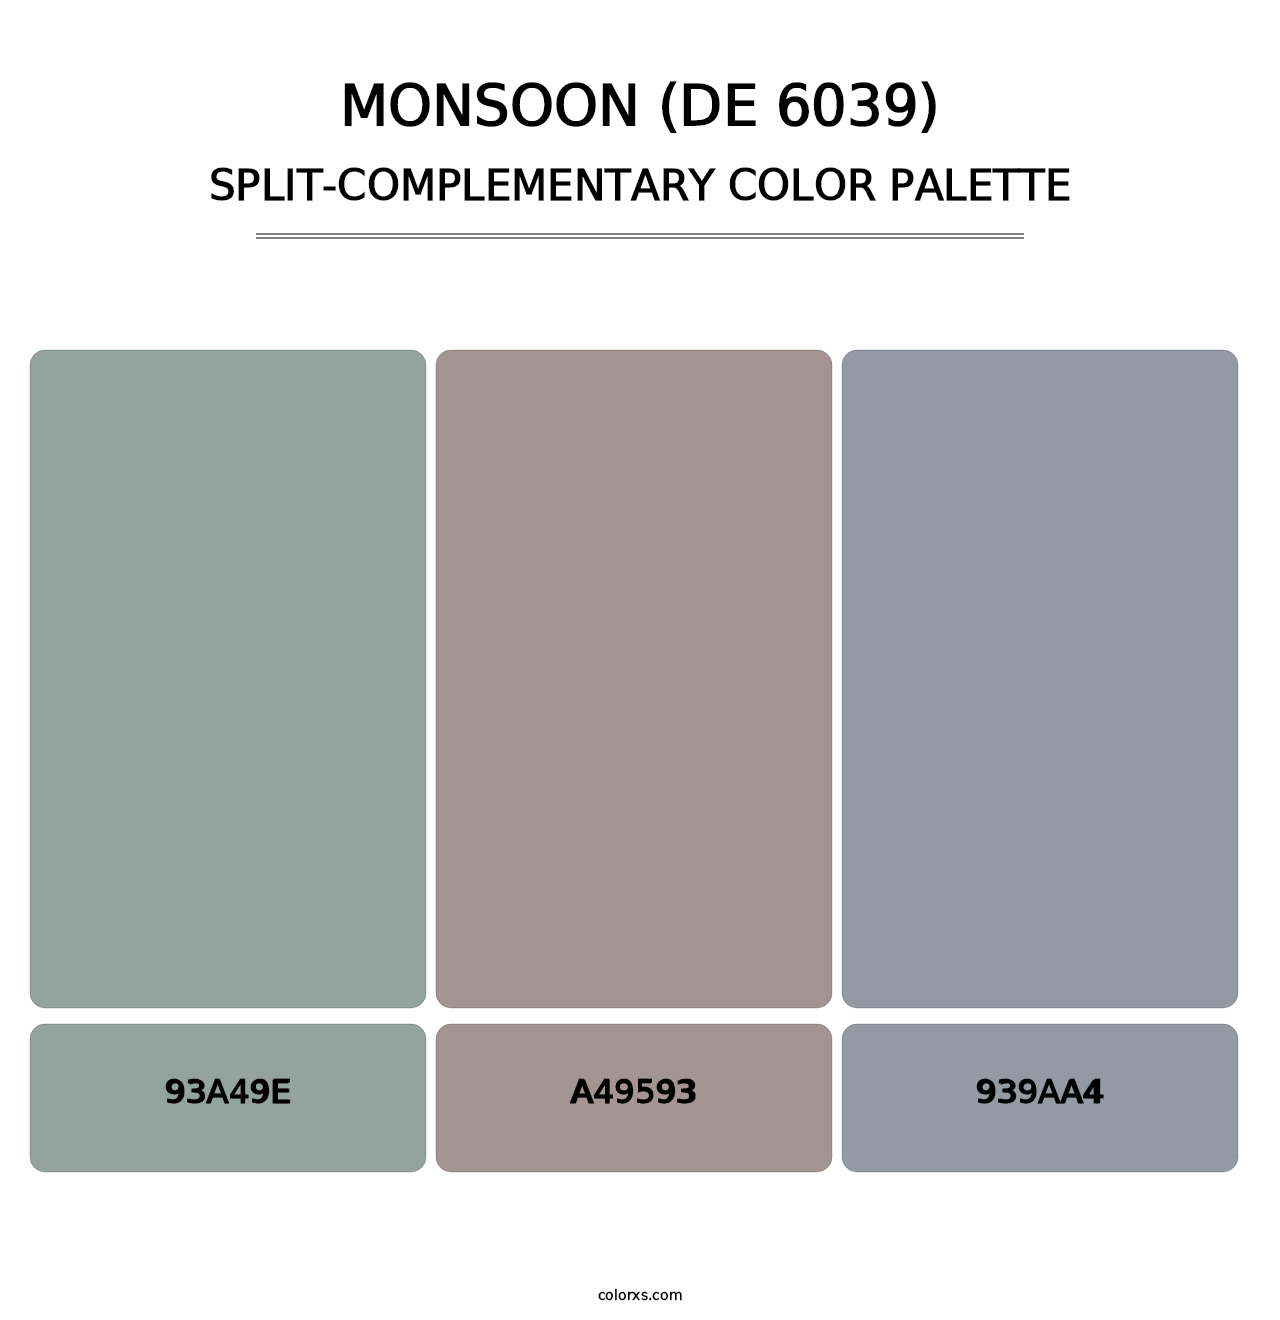 Monsoon (DE 6039) - Split-Complementary Color Palette